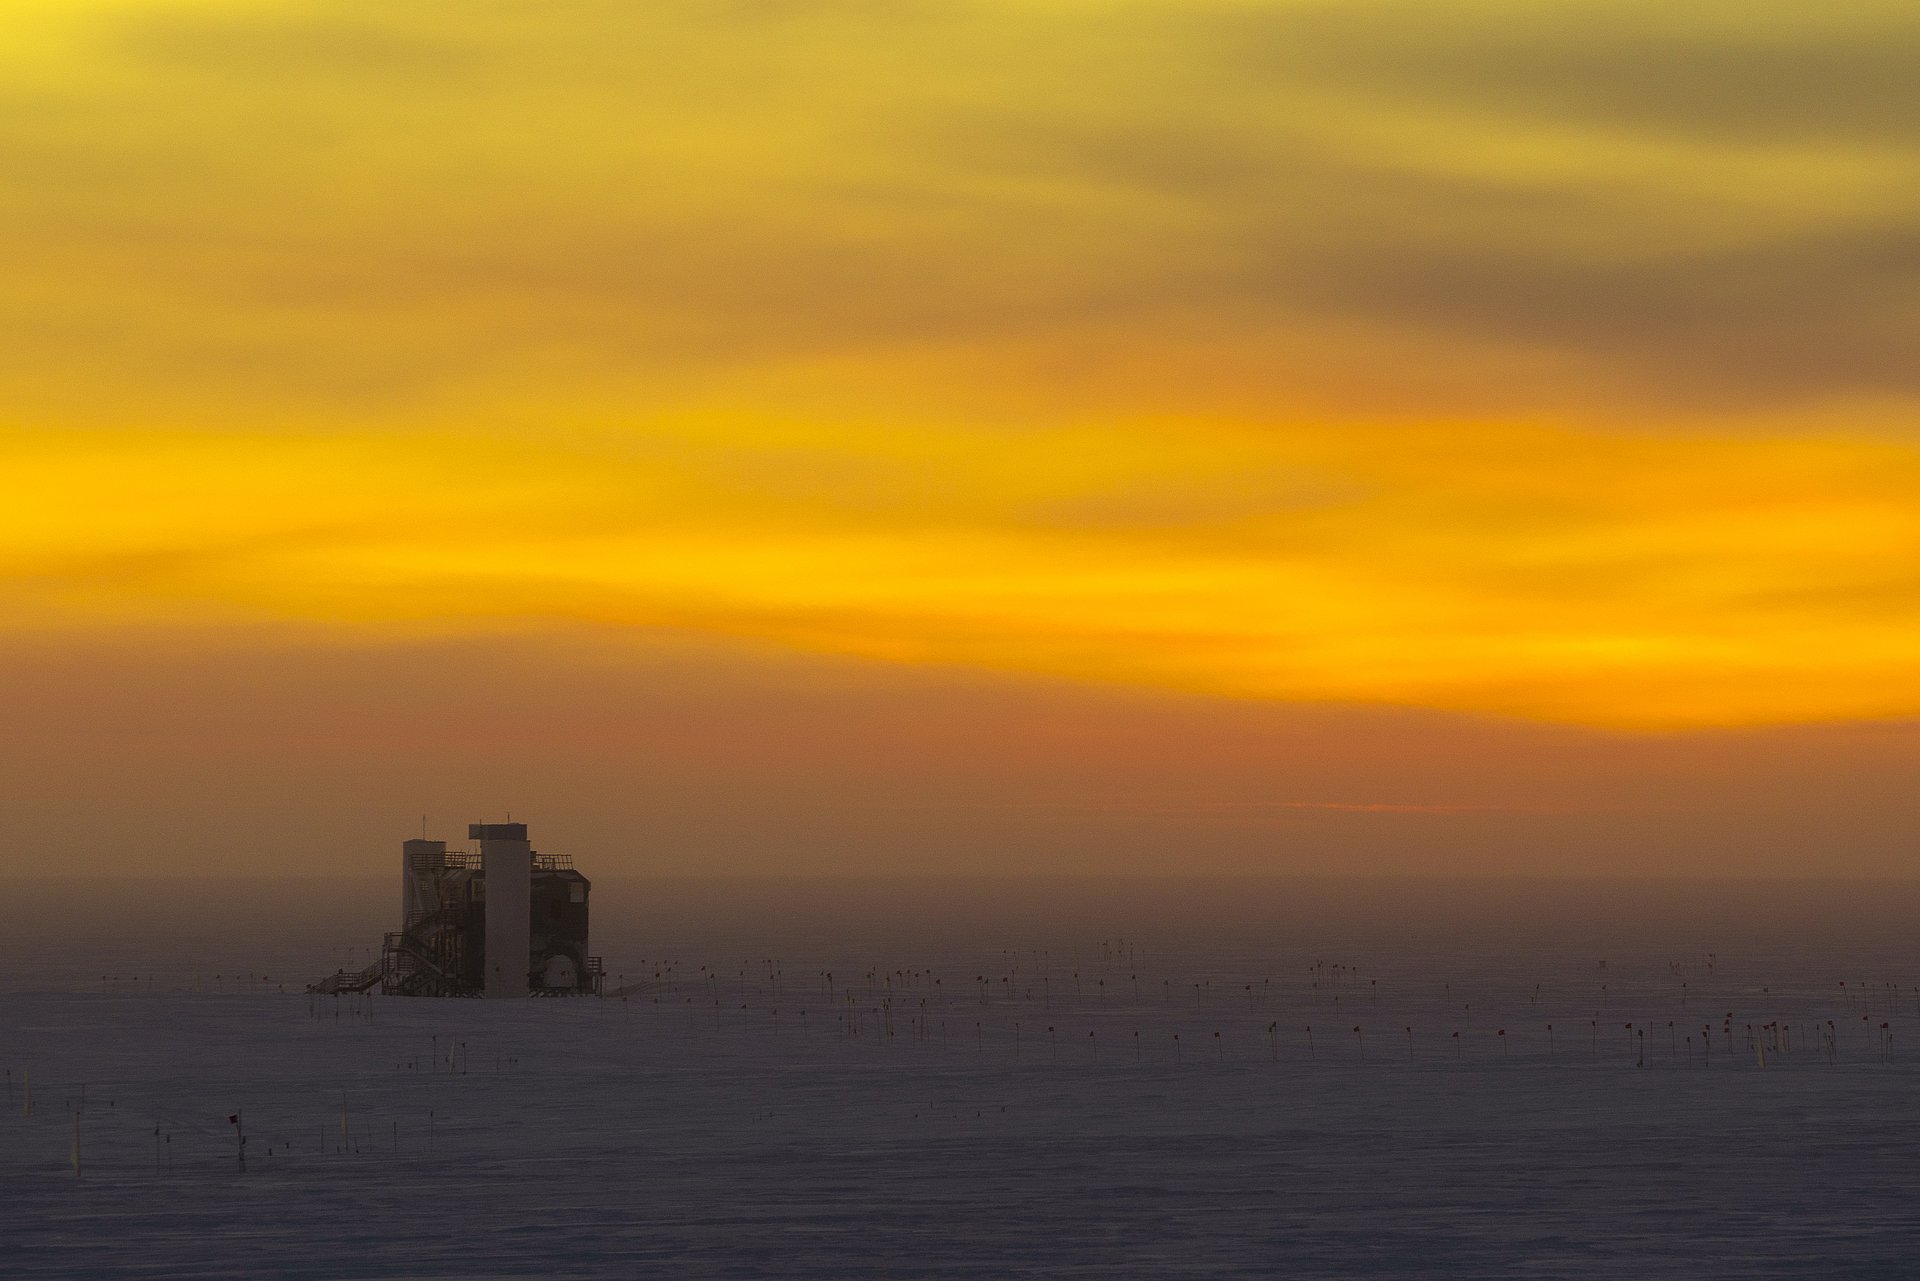 Das IceCube-Labor in der Ferne vor dem durch den Sonnenuntergang orange gefärbten Himmel.